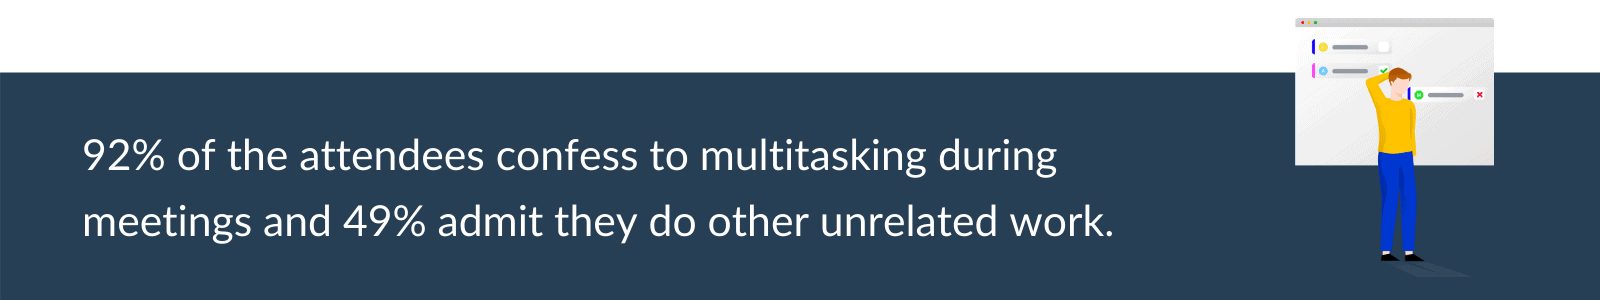 Multitasking during meetings